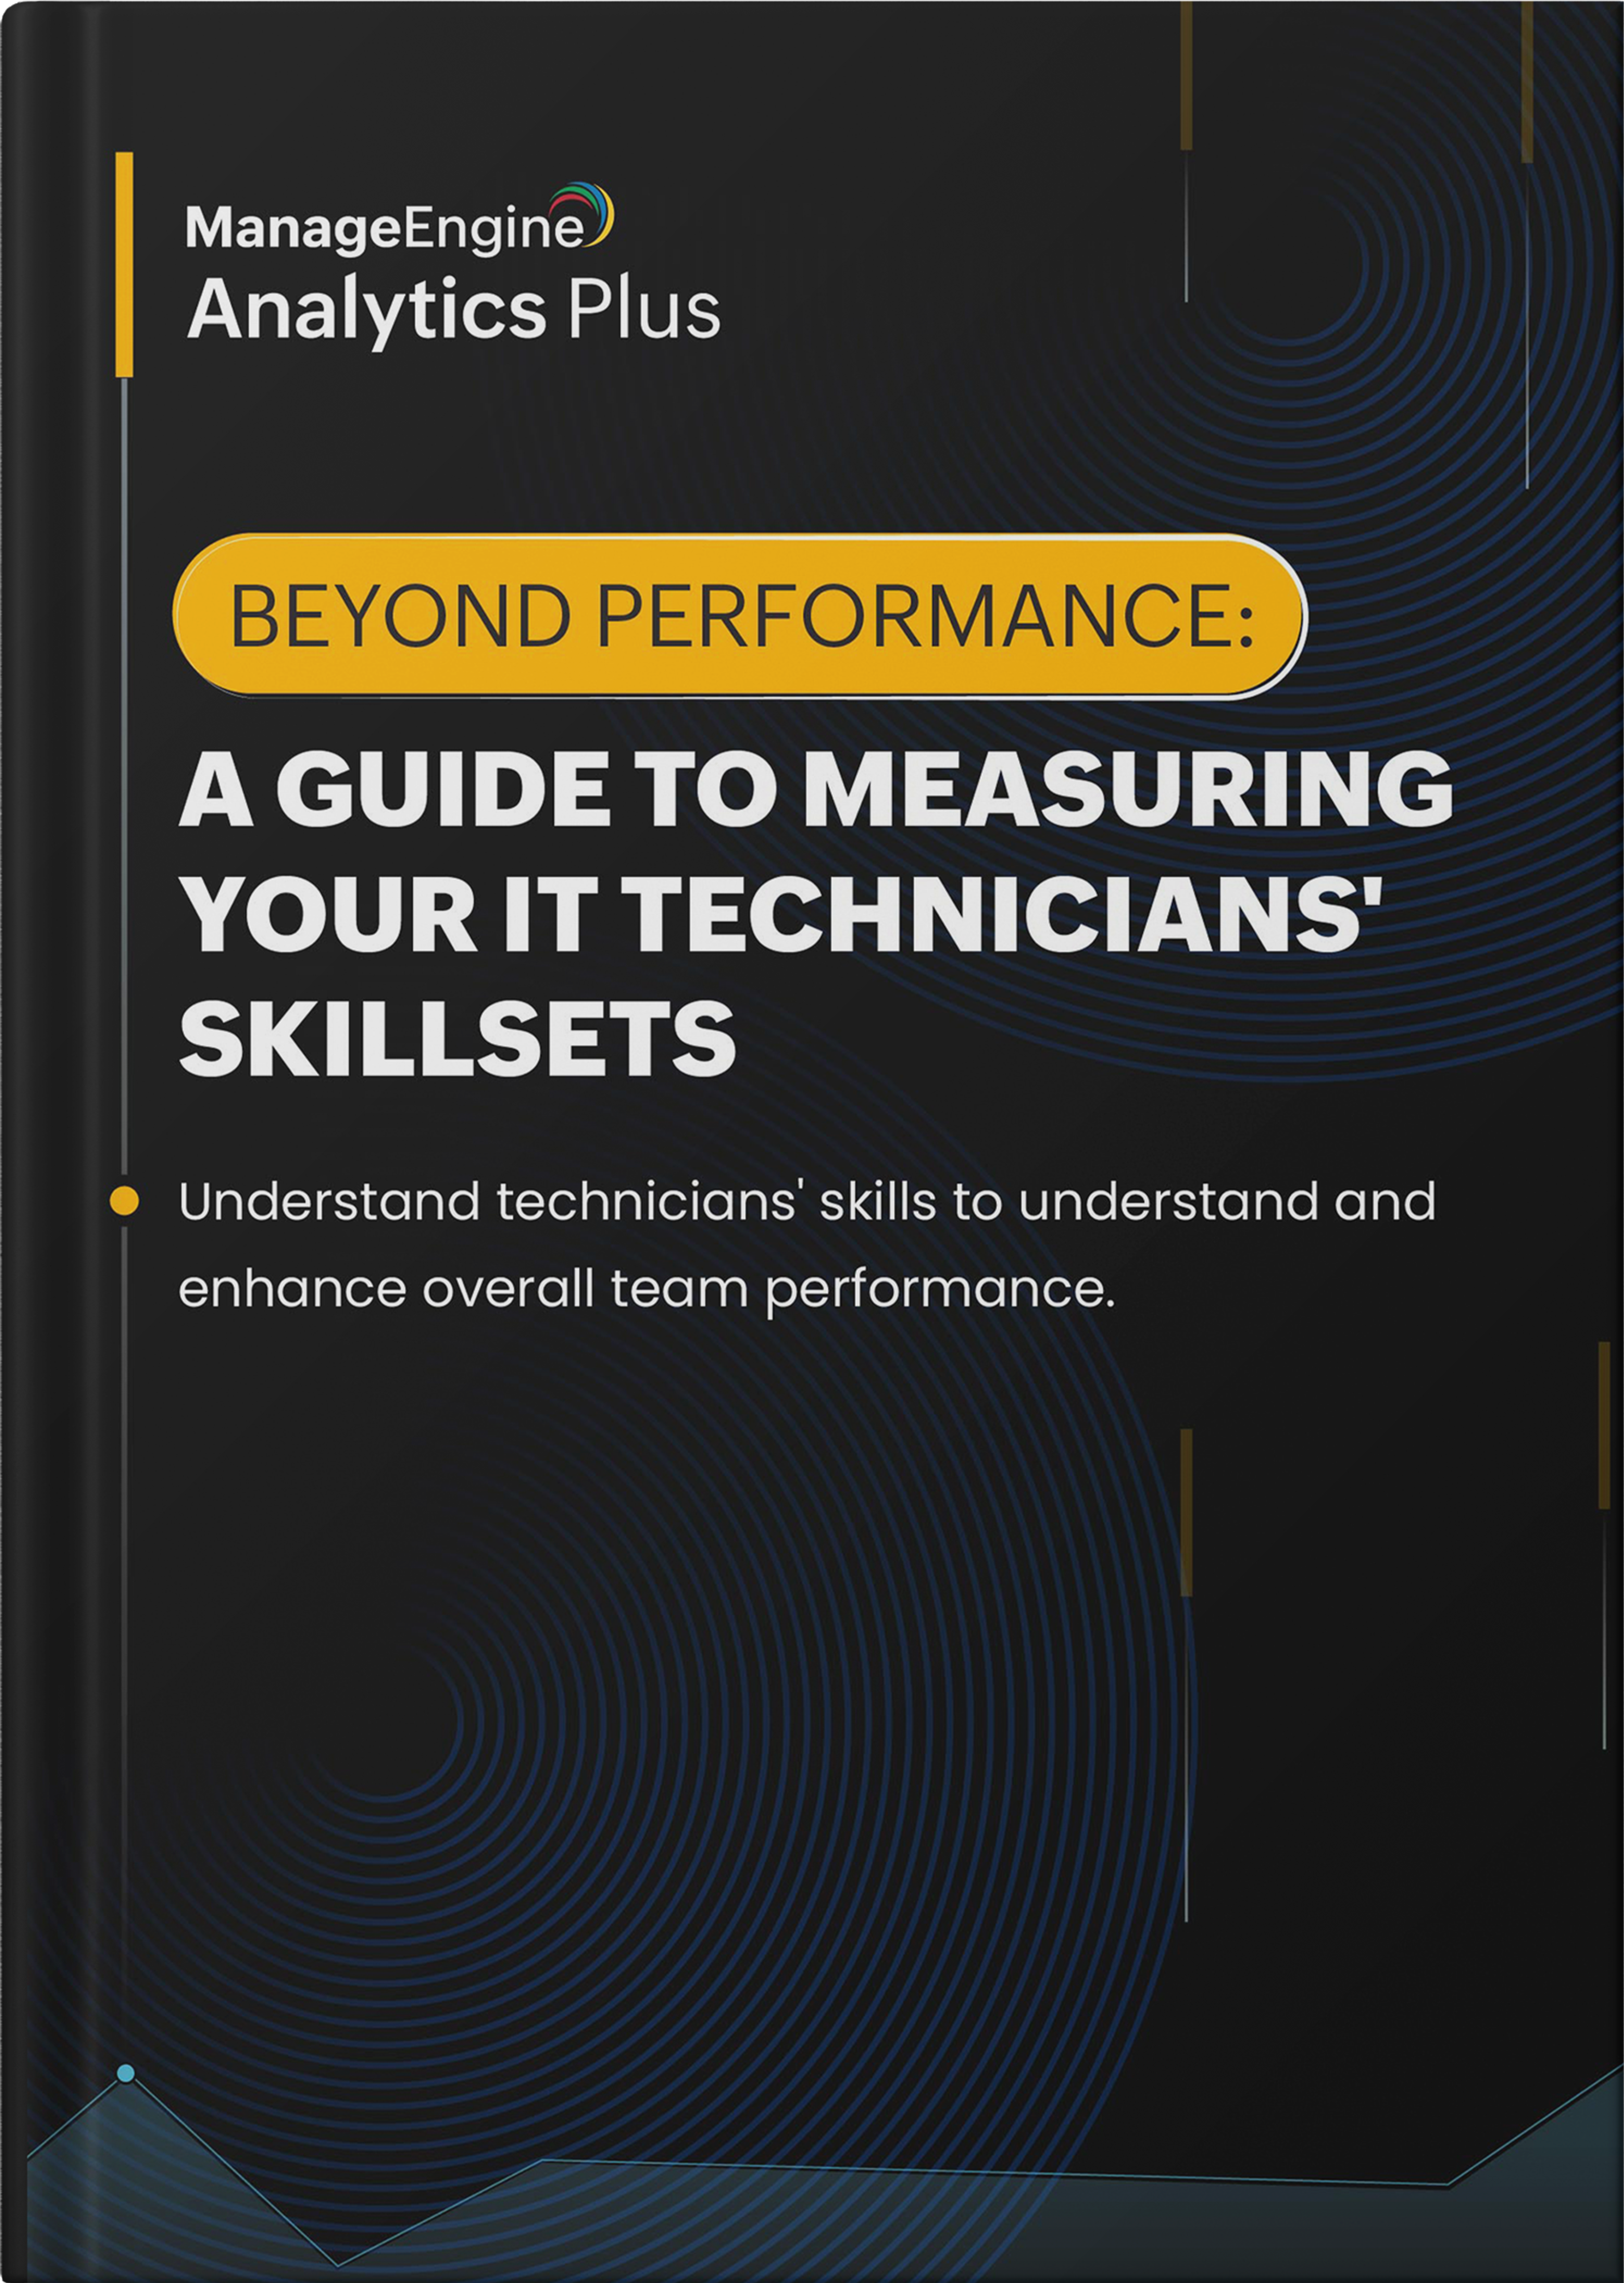 Au-delà de la performance : guide pour mesurer les compétences des